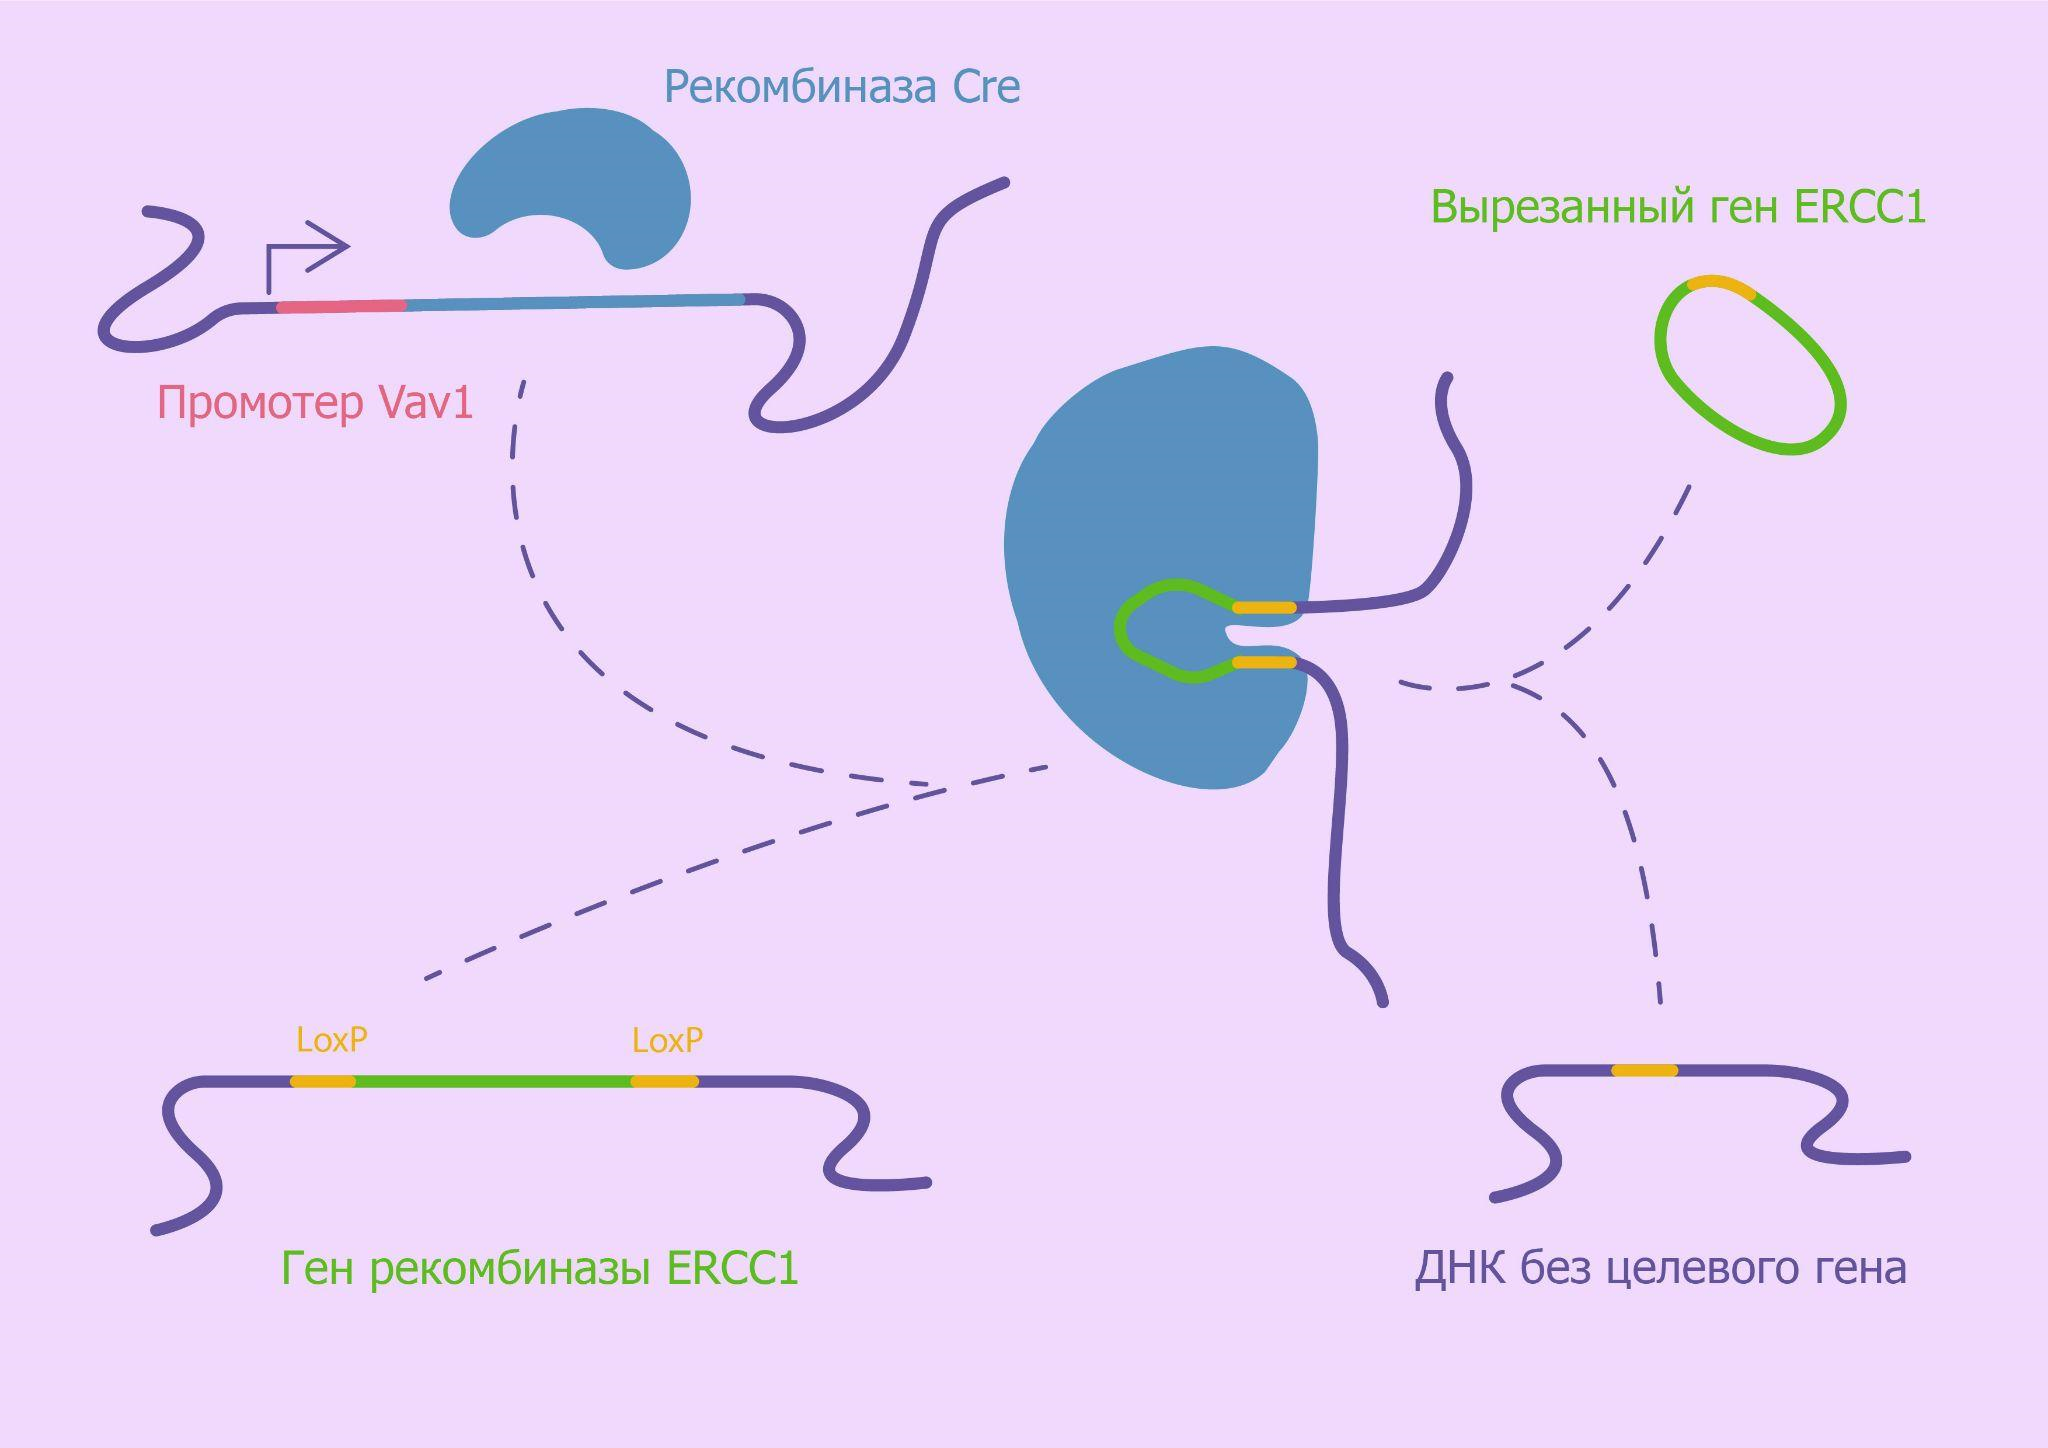 Механизм селективного нокаута эндонуклеазы ERCC1